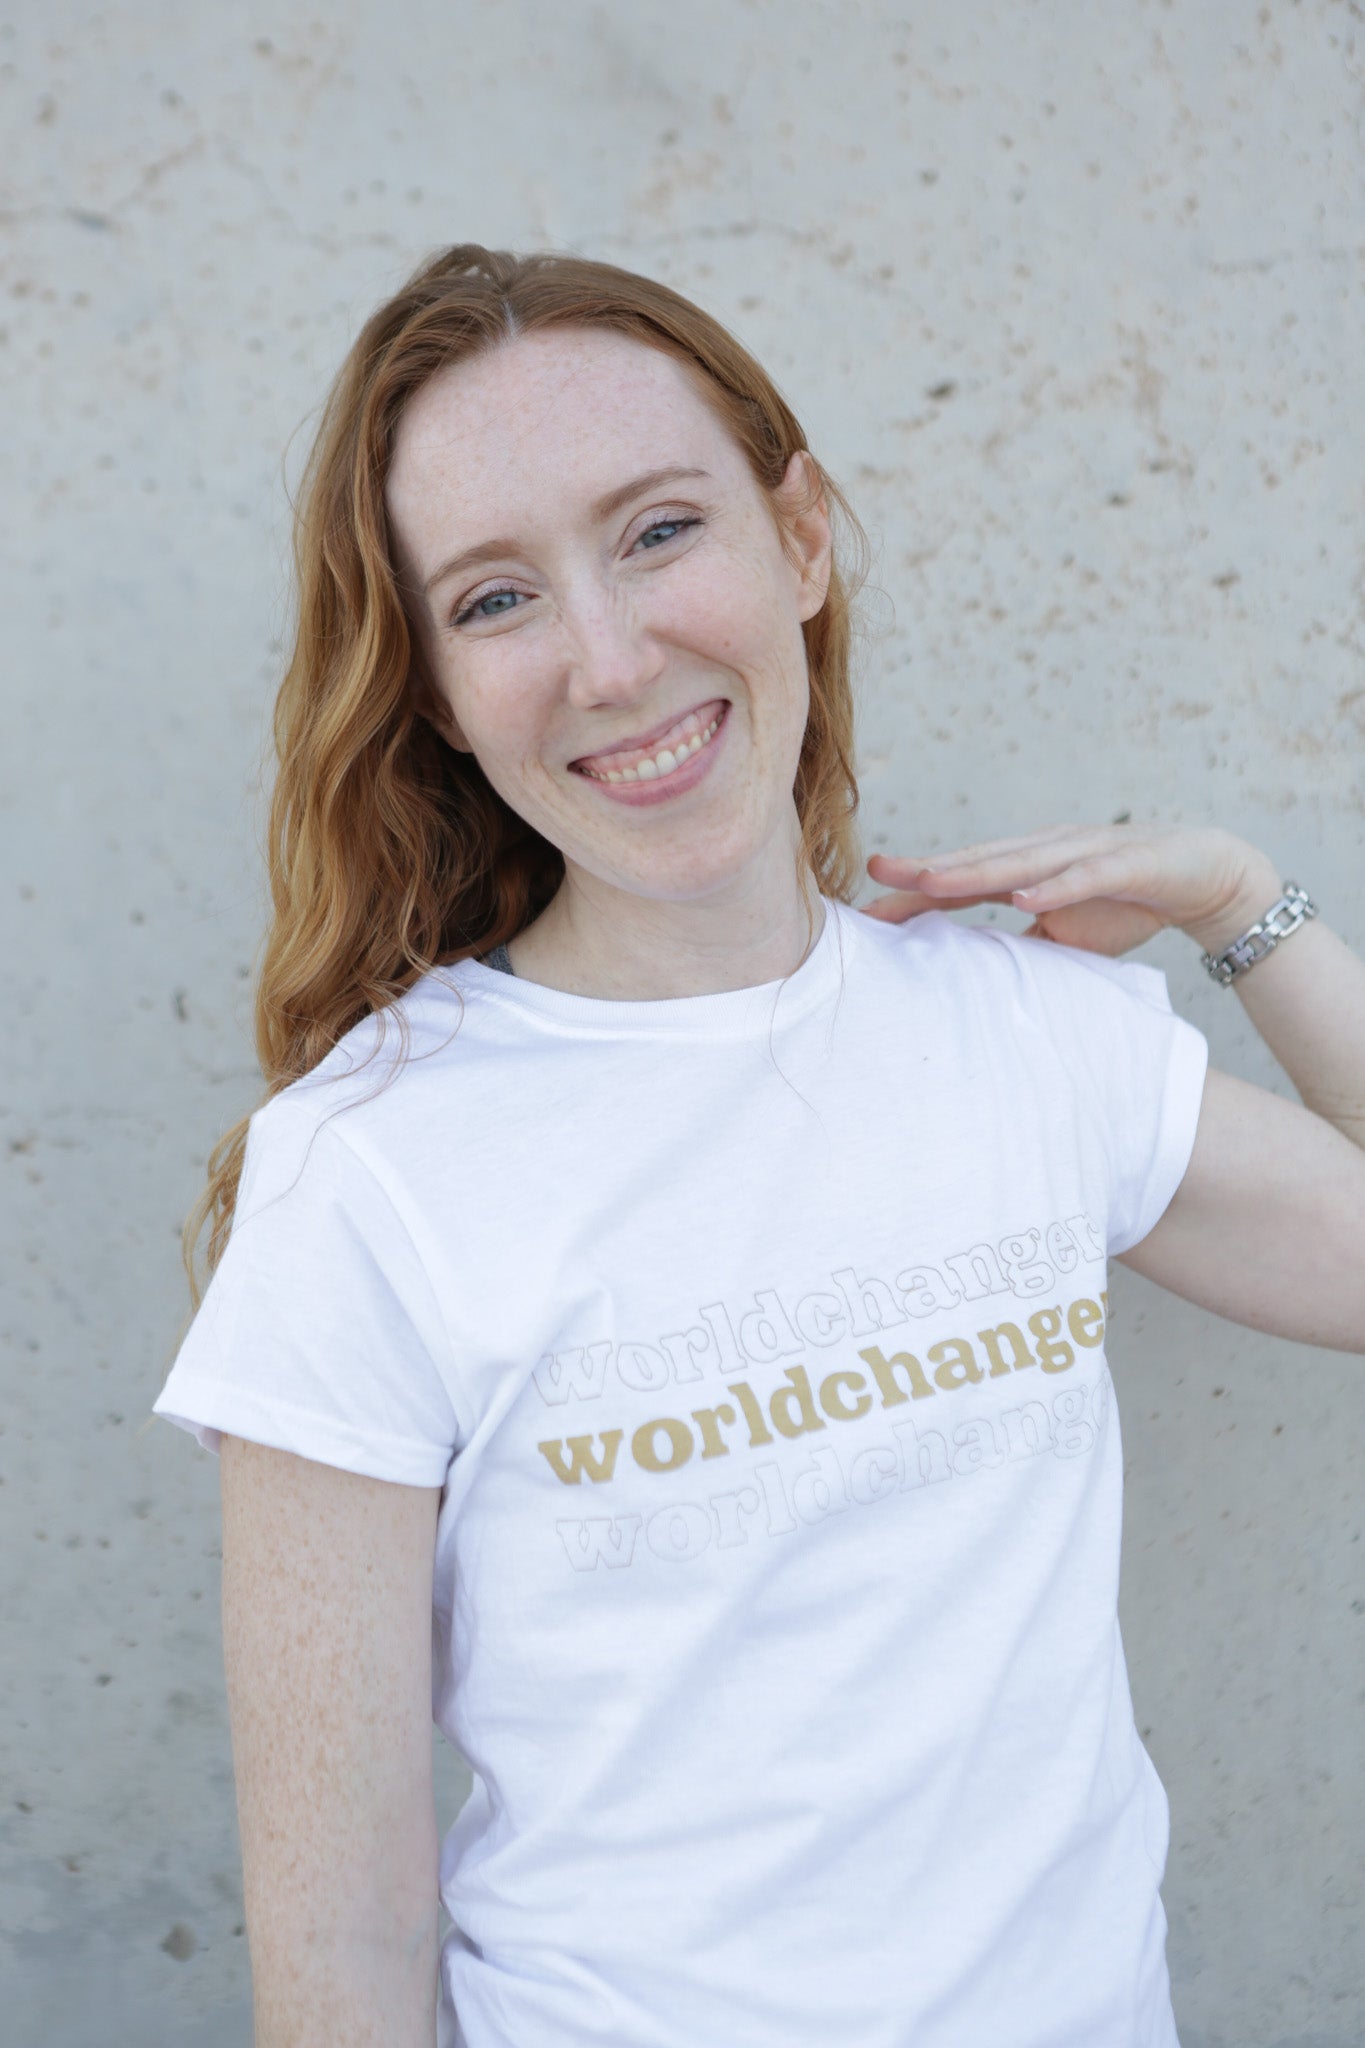 Worldchanger Women's T- Shirt (gold)